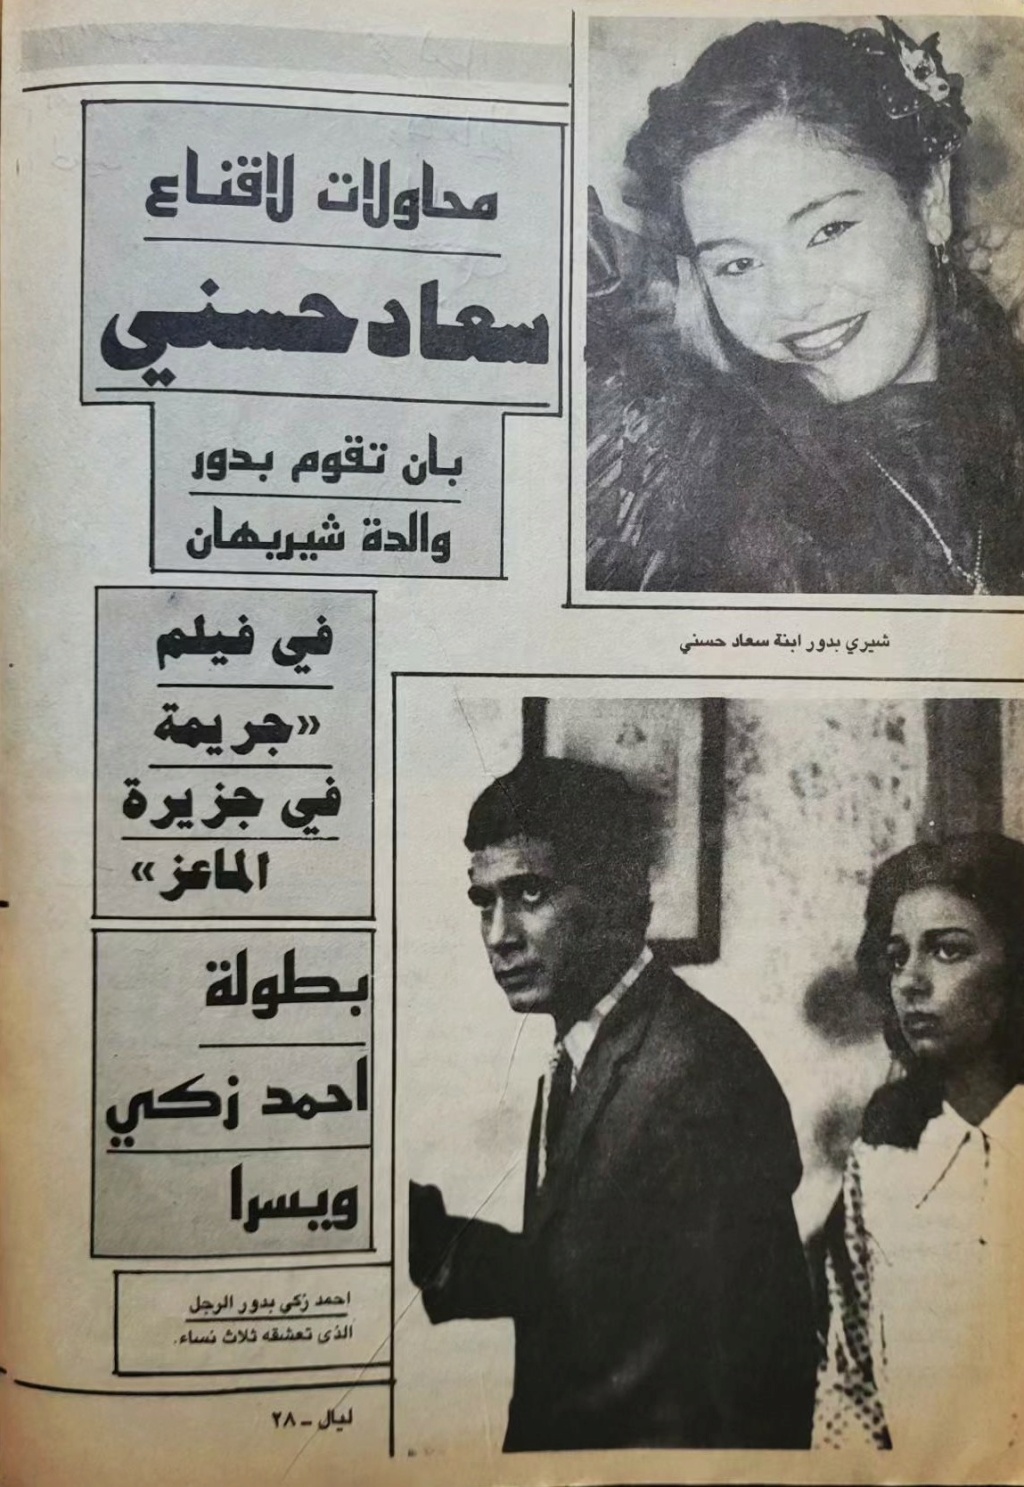 مقال صحفي : محاولات لاقناع سعاد حسني بان تقوم بدور والدة شيريهان 1987 م 1469